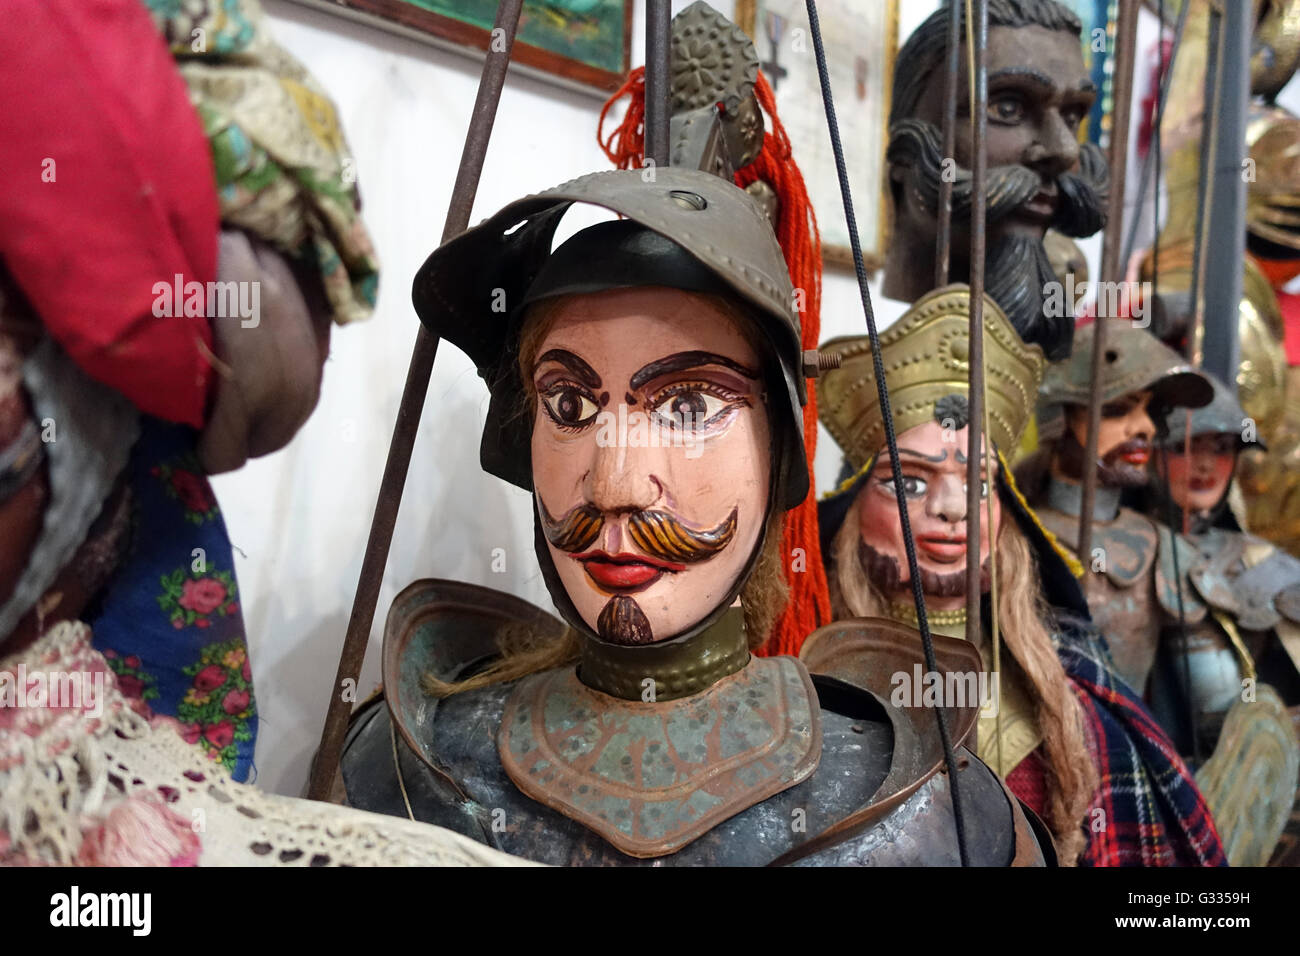 Aci Trezza, Italie, marionnettes Banque D'Images